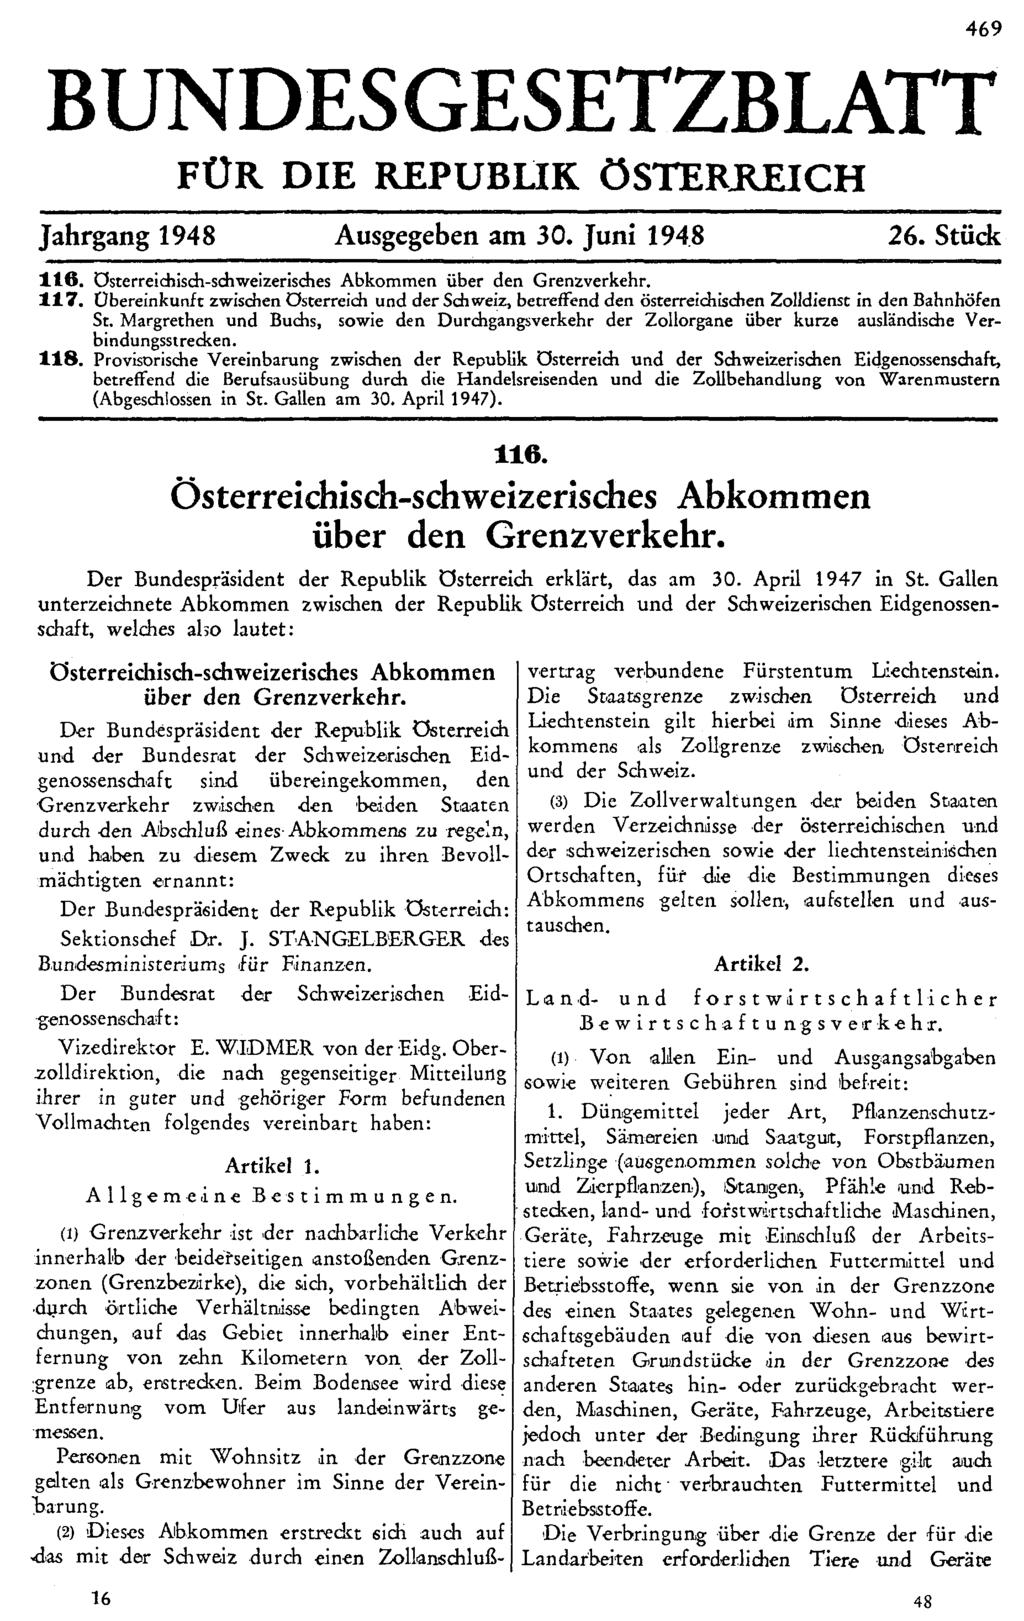 BUNDESGESETZBLATT FÜR DIE REPUBLIK ÖSTERREICH Jahrgang 1948 Ausgegeben am 30. Juni 1948 26. Stück 116. Österreichisch-schweizerisches Abkommen über den Grenzverkehr. 117.